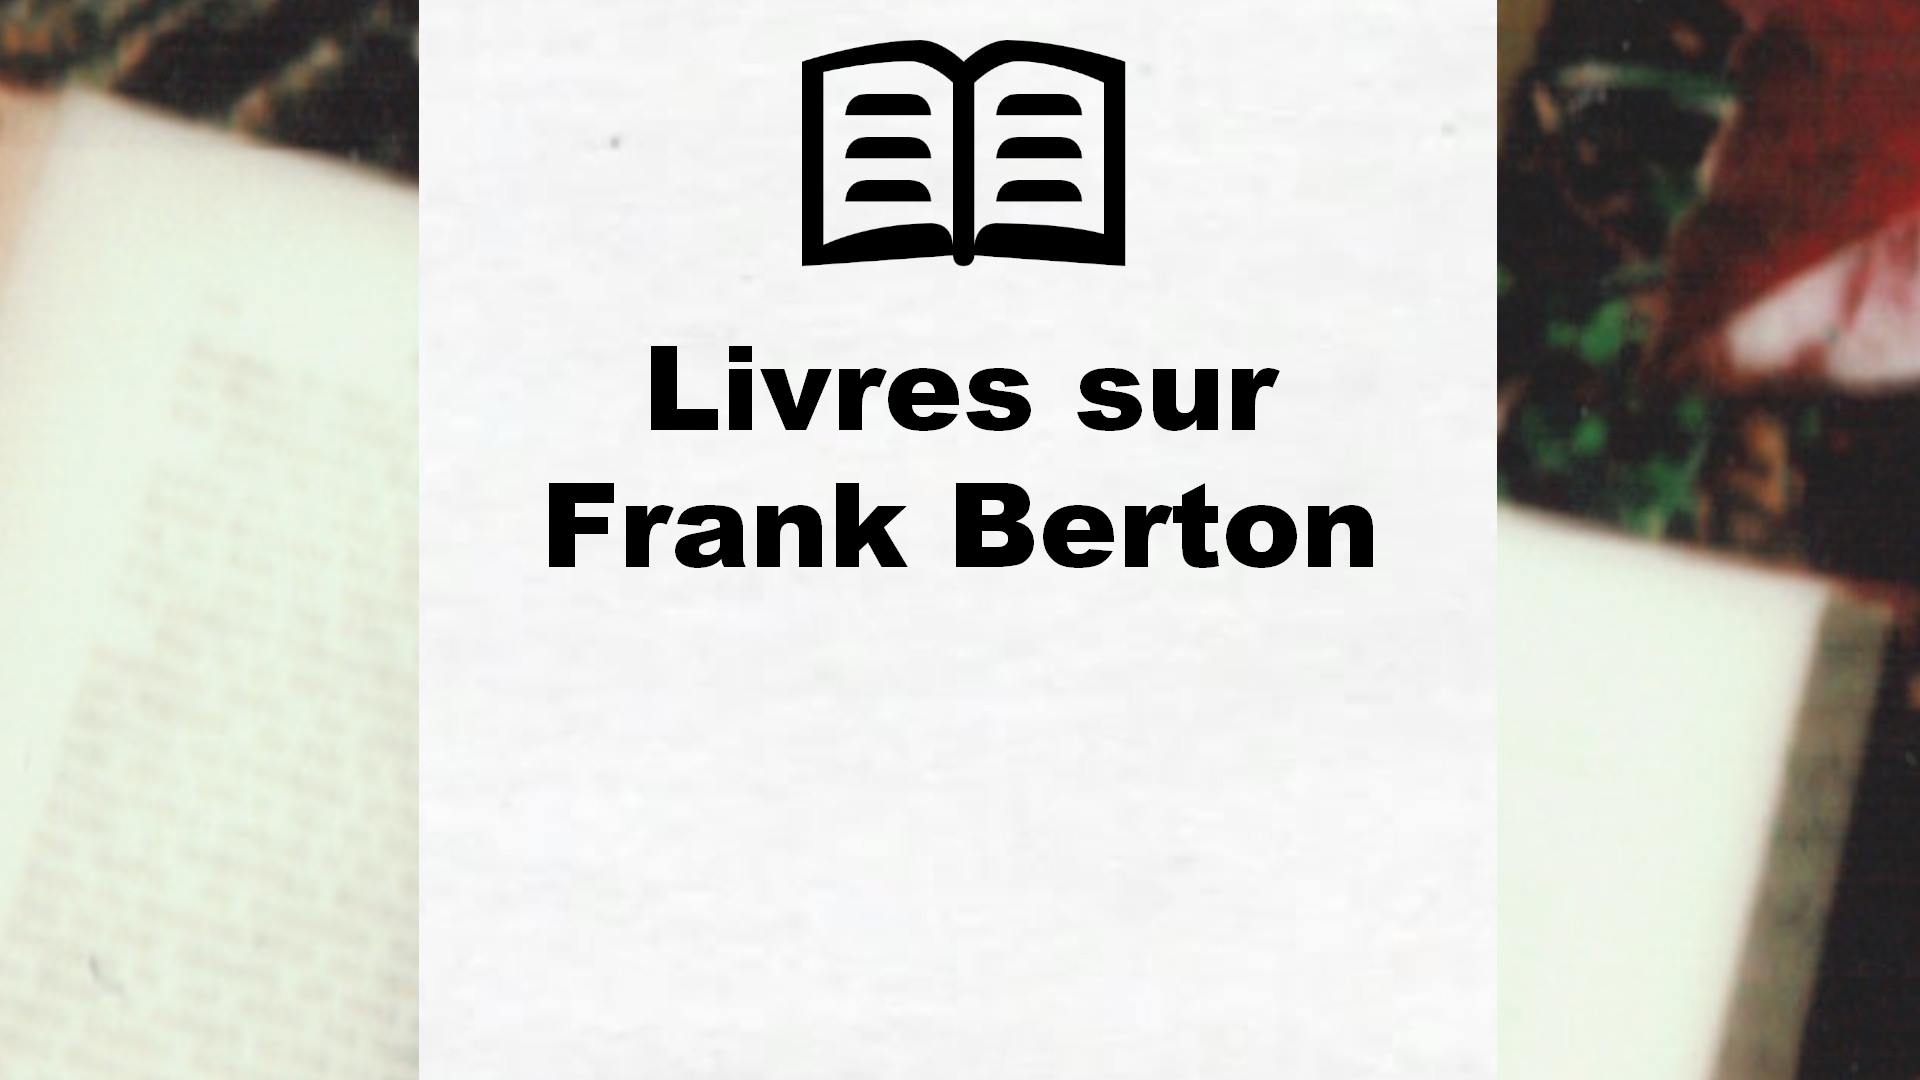 Livres sur Frank Berton